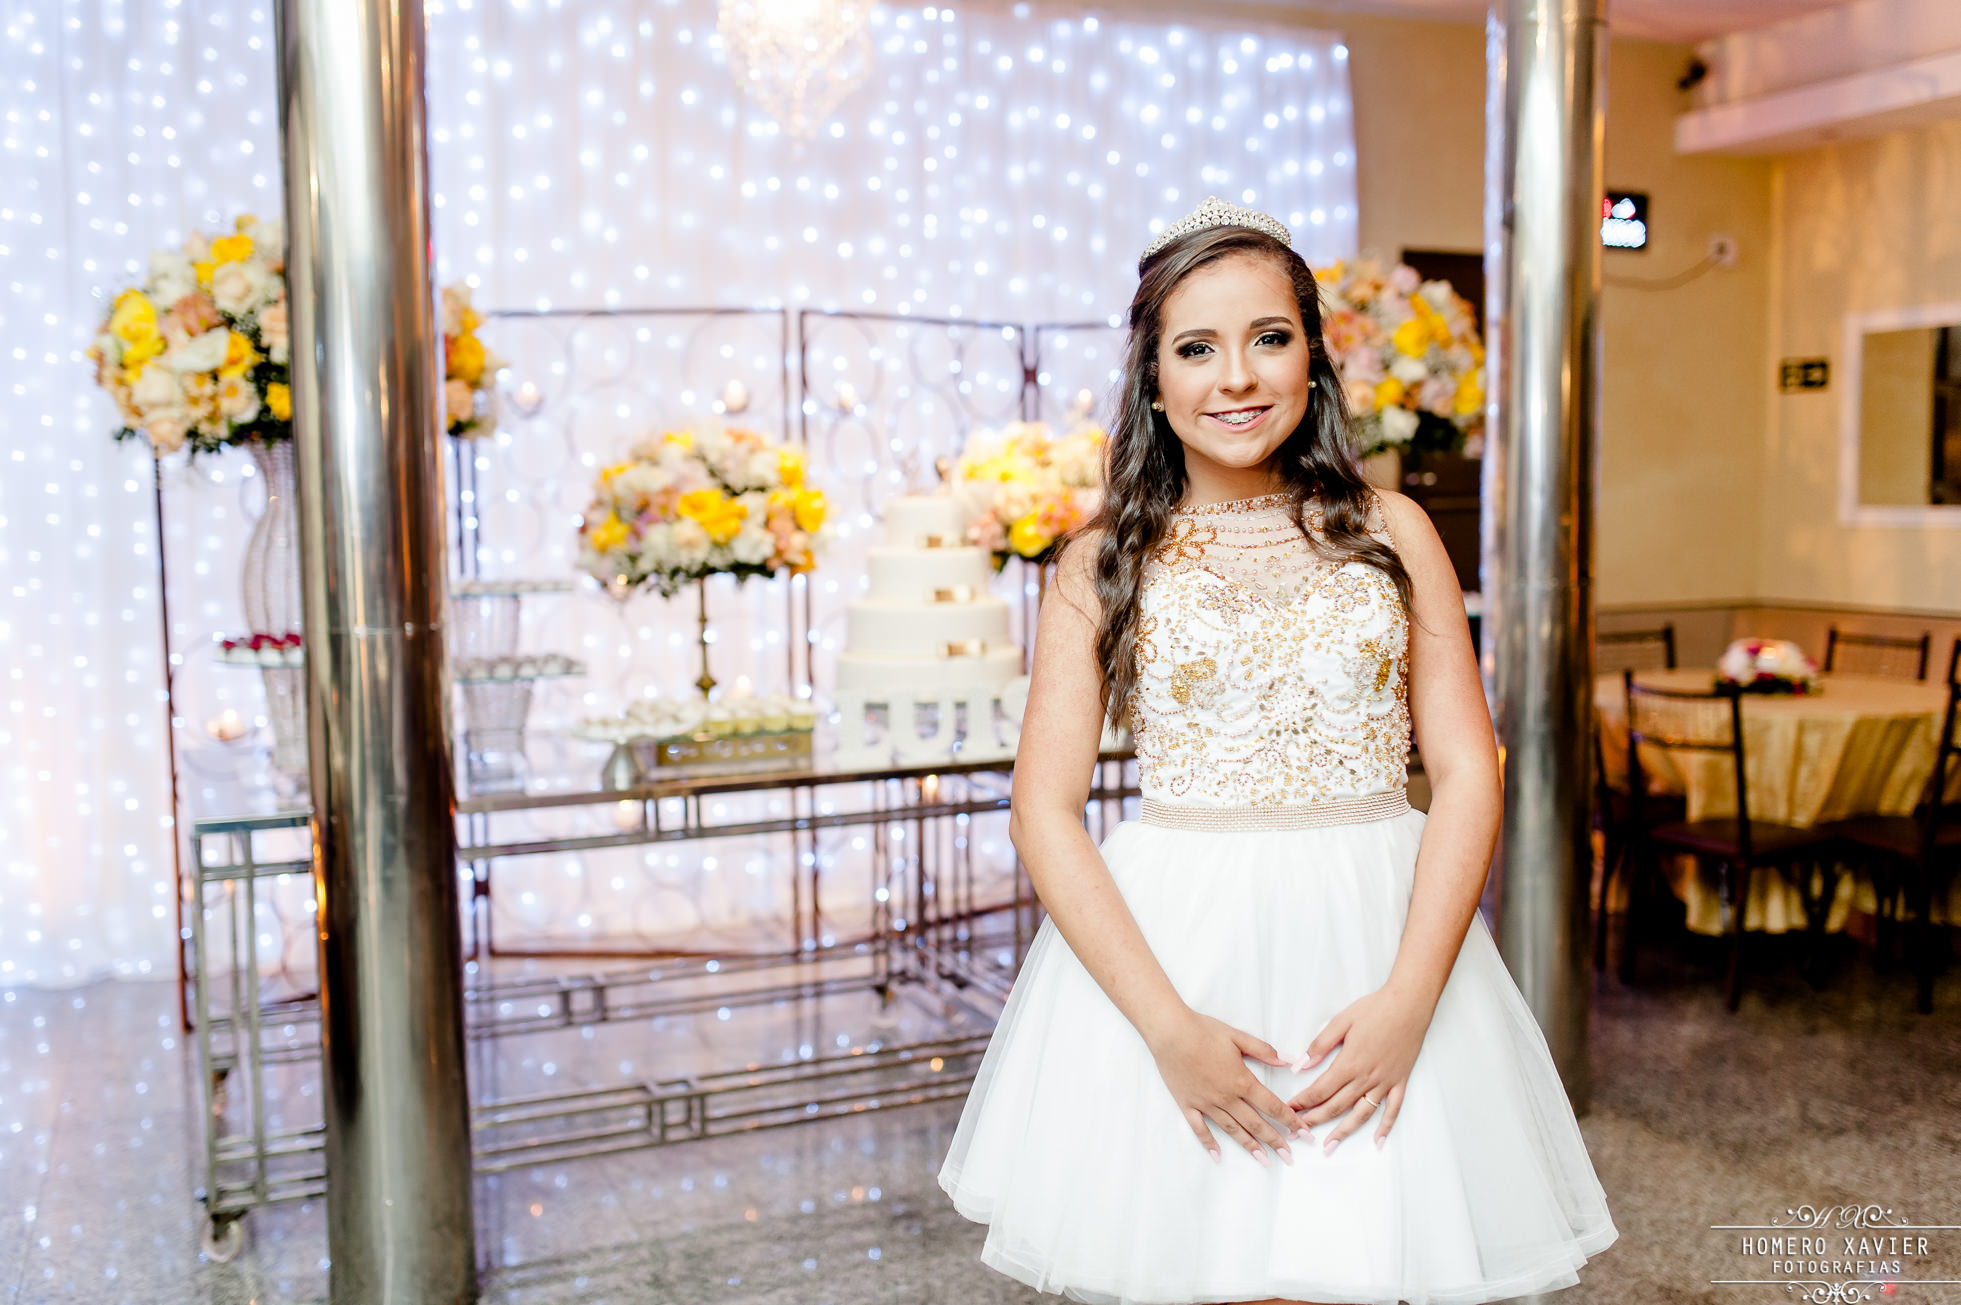 Fotografia festa aniversário Luísa de 15 anos em BH, salão de festas O Sonhador